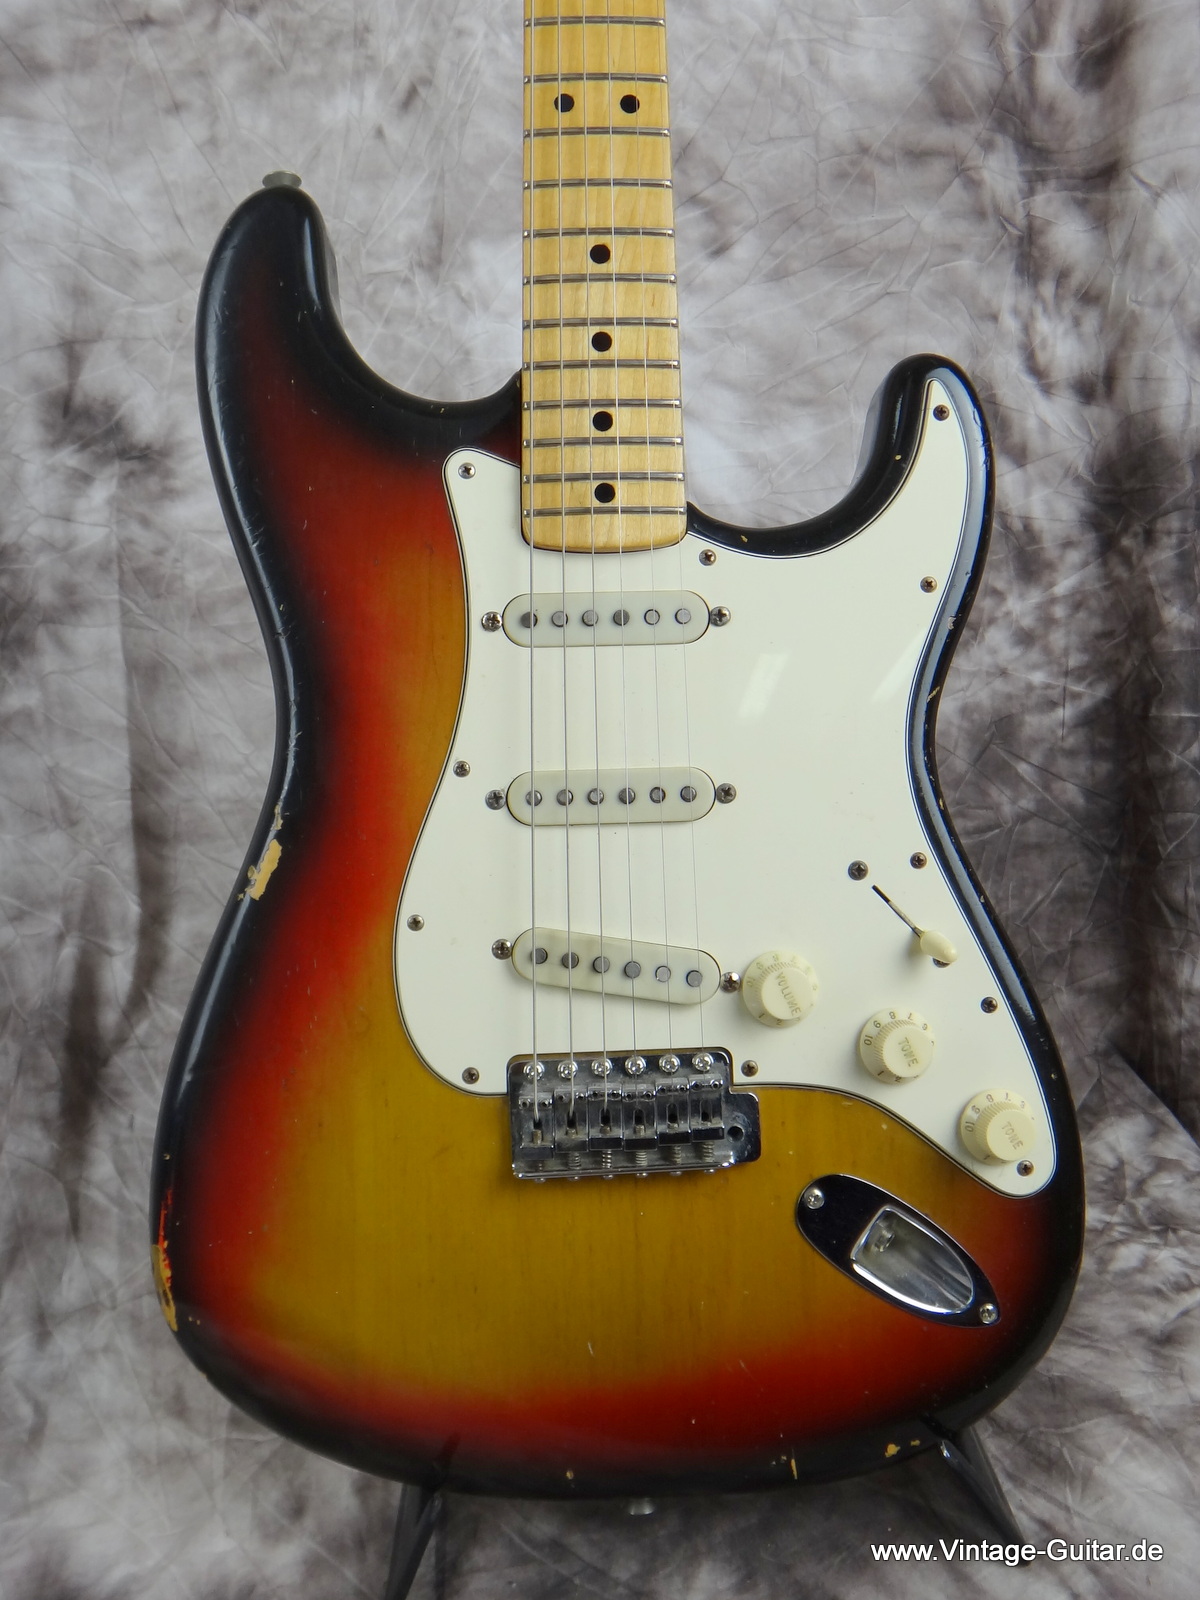 Fender_Stratocaster_1974-sunburst-010.JPG